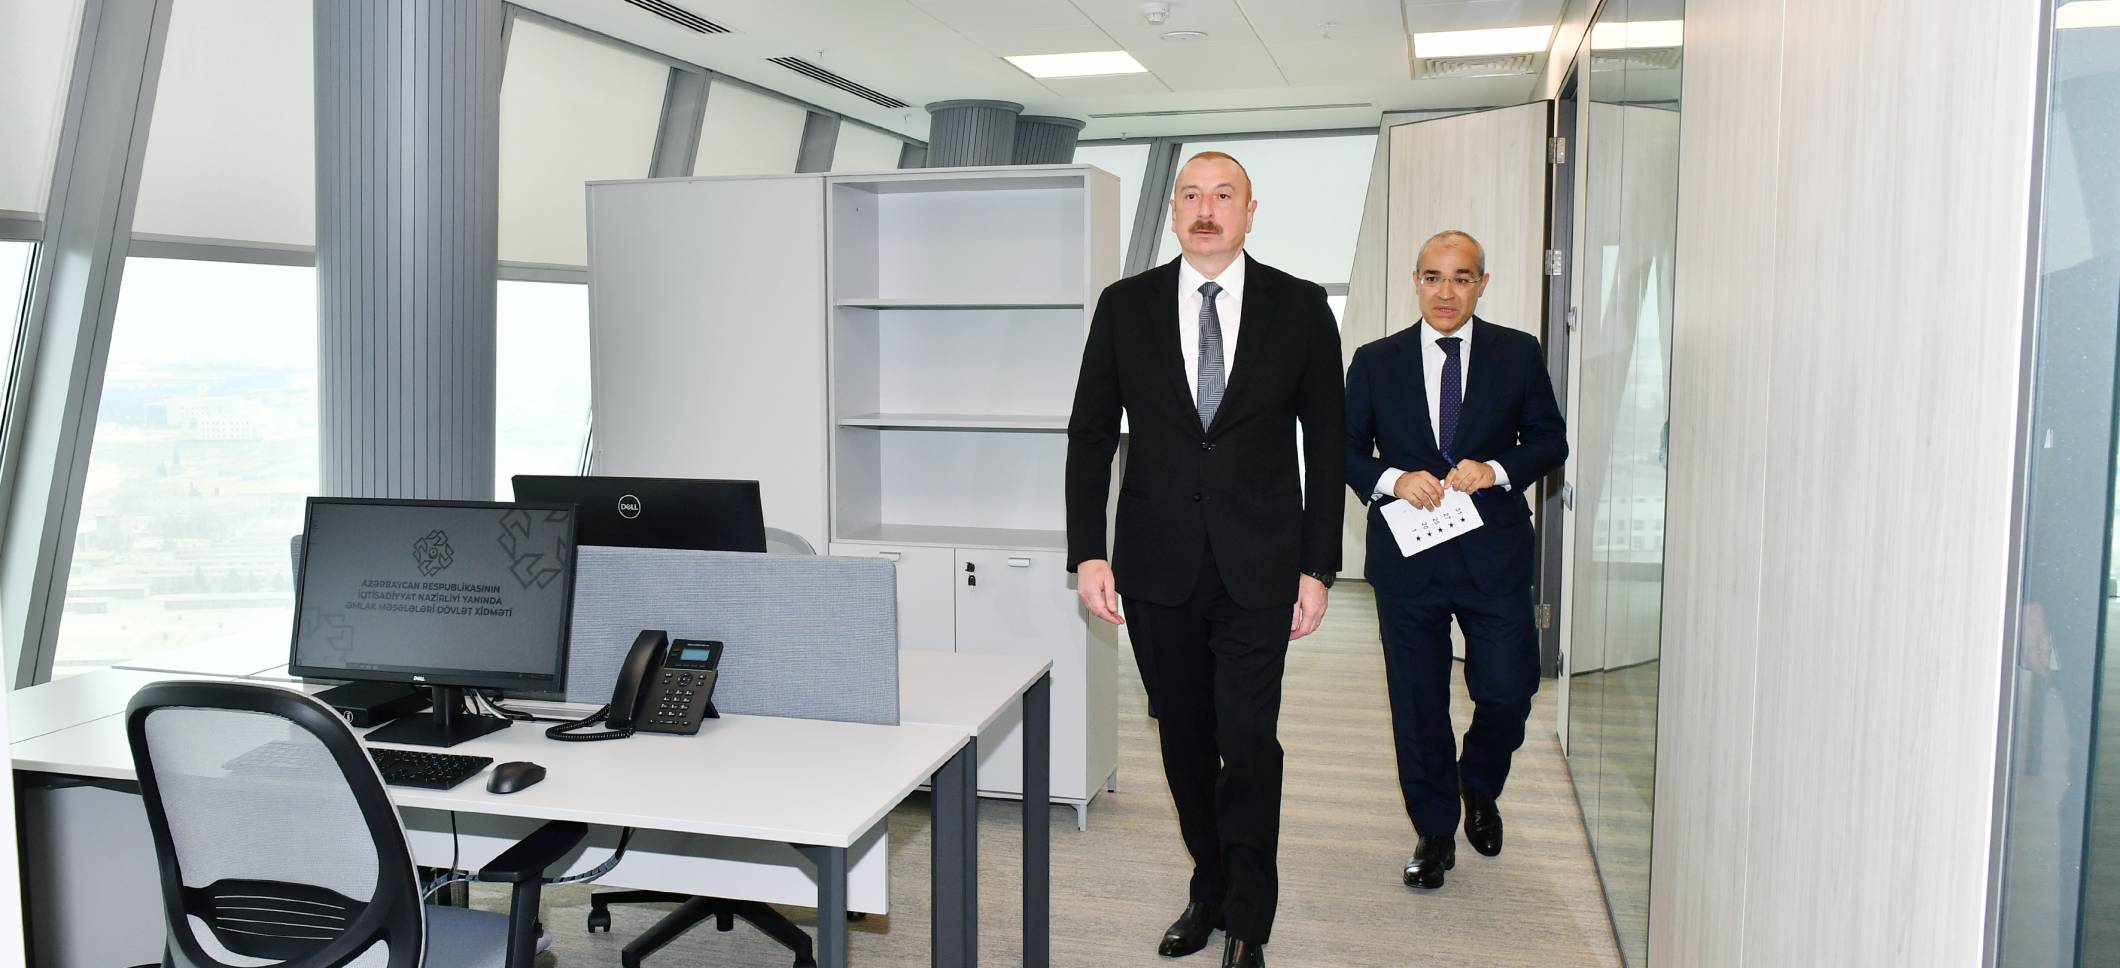 Ильхам Алиев принял участие в открытии нового административного здания Государственной службы по вопросам имущества